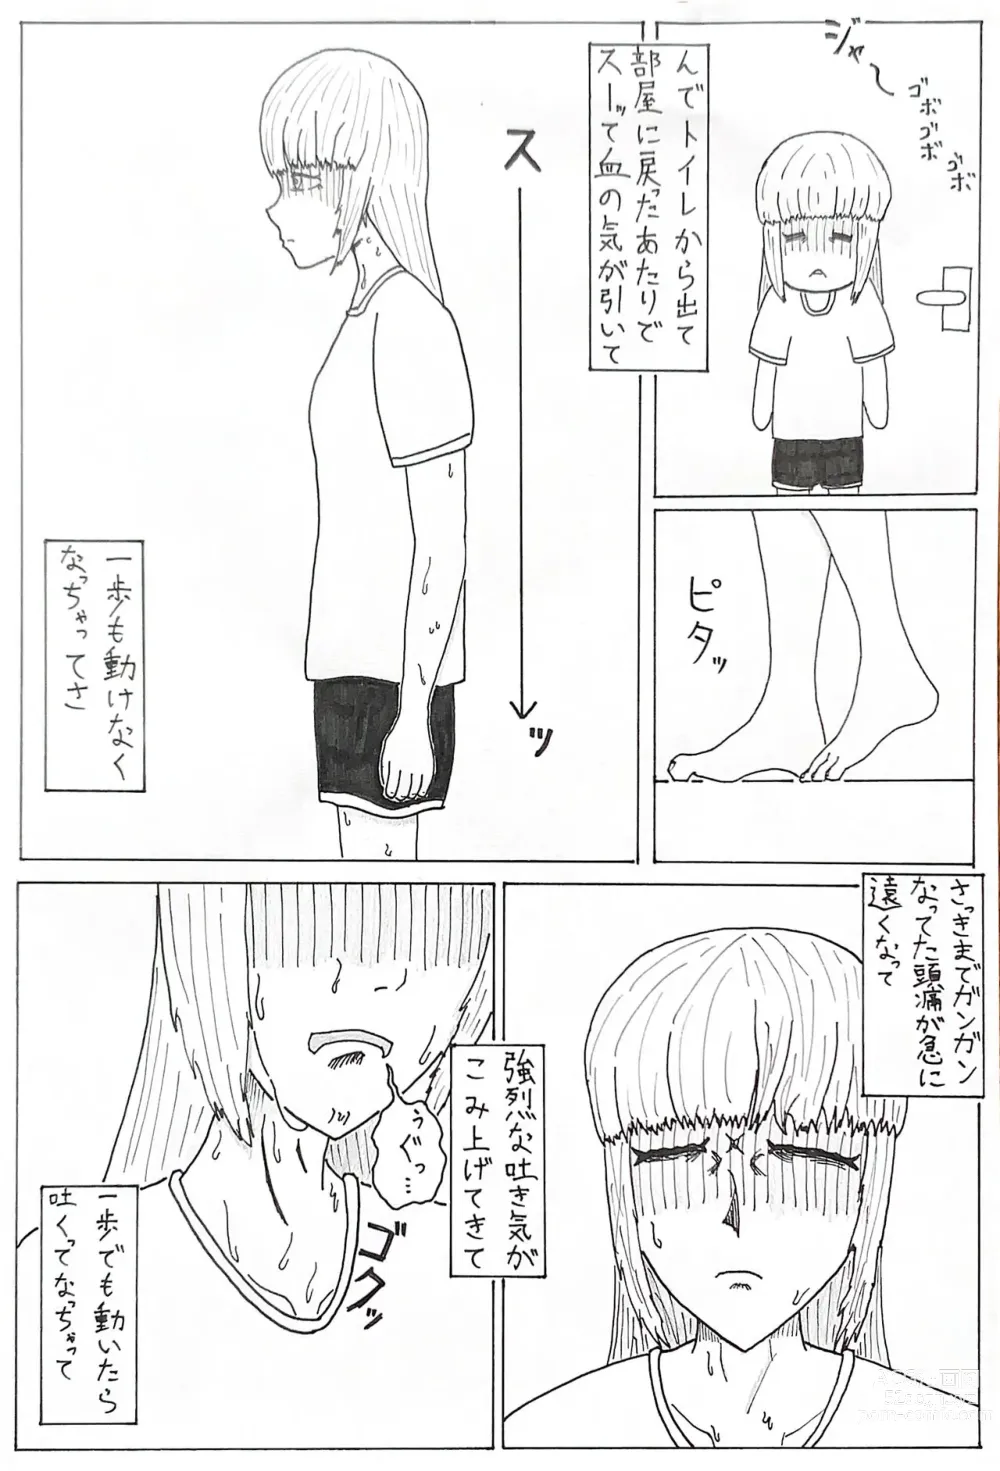 Page 3 of doujinshi Geemu